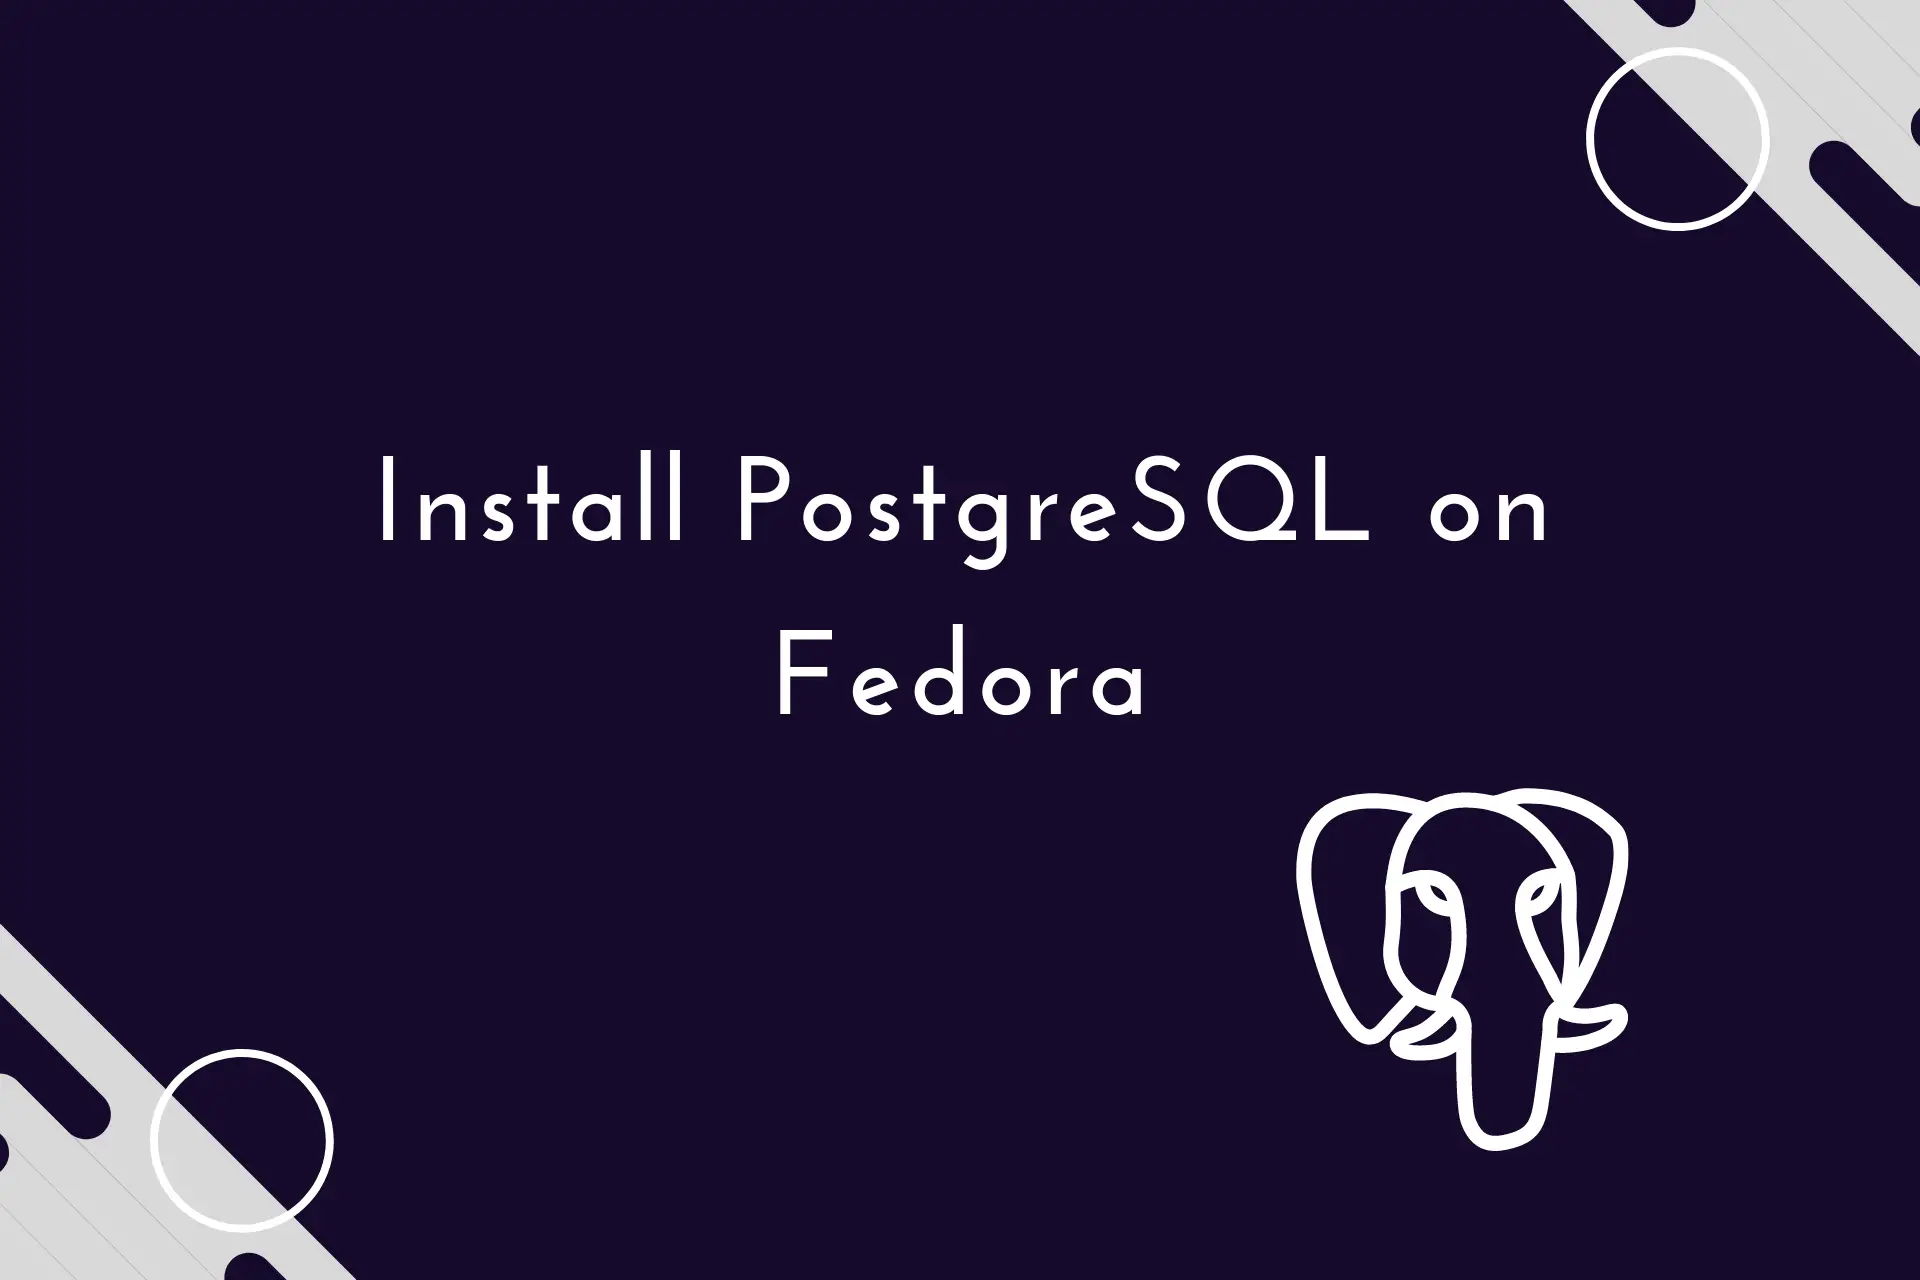 Install PostgreSQL on Fedora 36